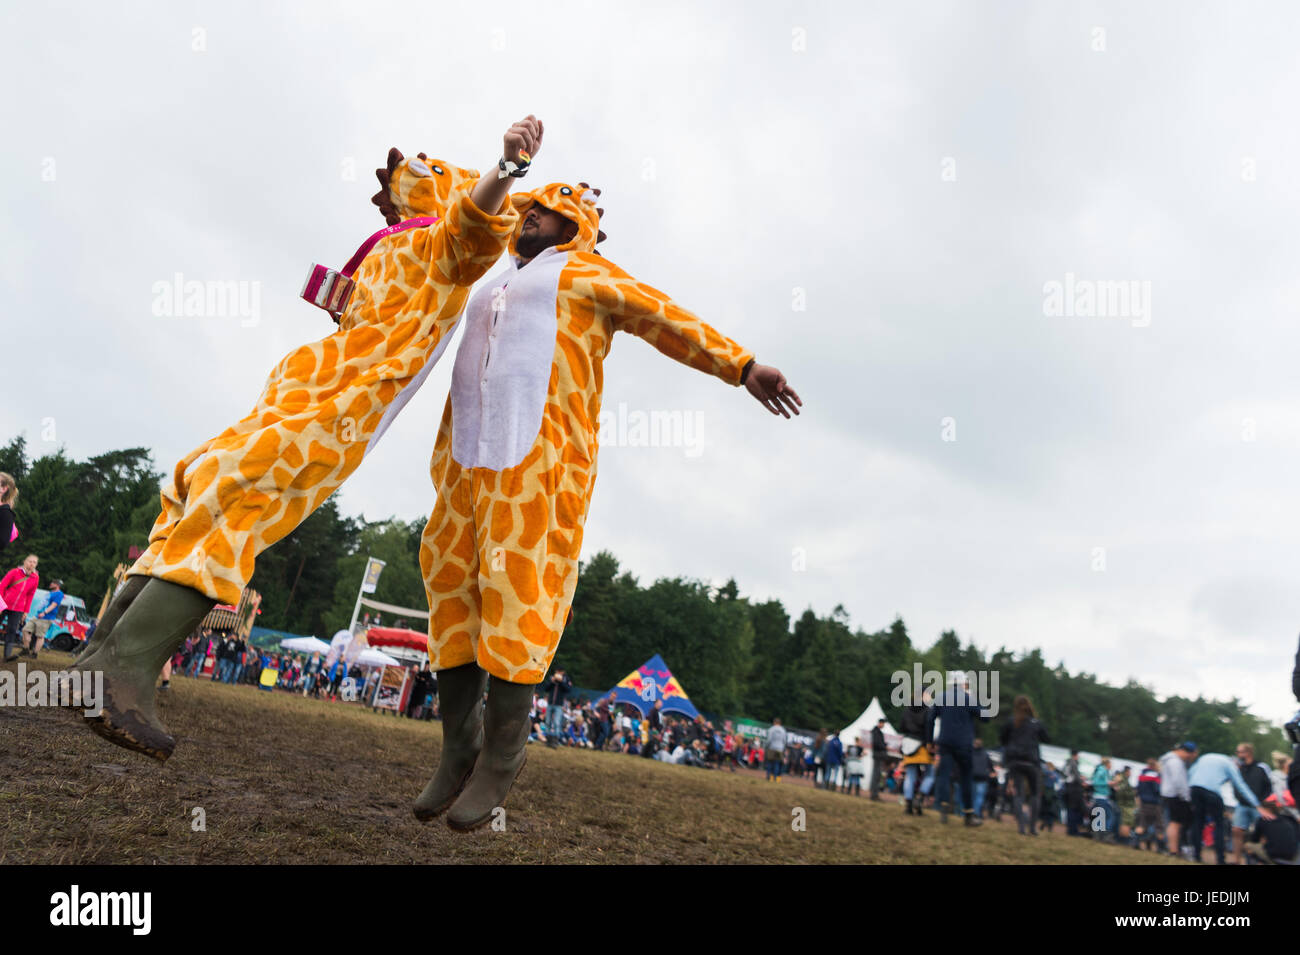 Zwei Männer in Kostümen der Giraffe stoßen gegeneinander, während des zweiten Tages des Hurricane Festival in Scheeßel, Deutschland, 23. Juni 2017. Die 21. Ausgabe des Festivals findet zwischen 23 und 25 Juni statt. Foto: Sebastian Gollnow/dpa Stockfoto